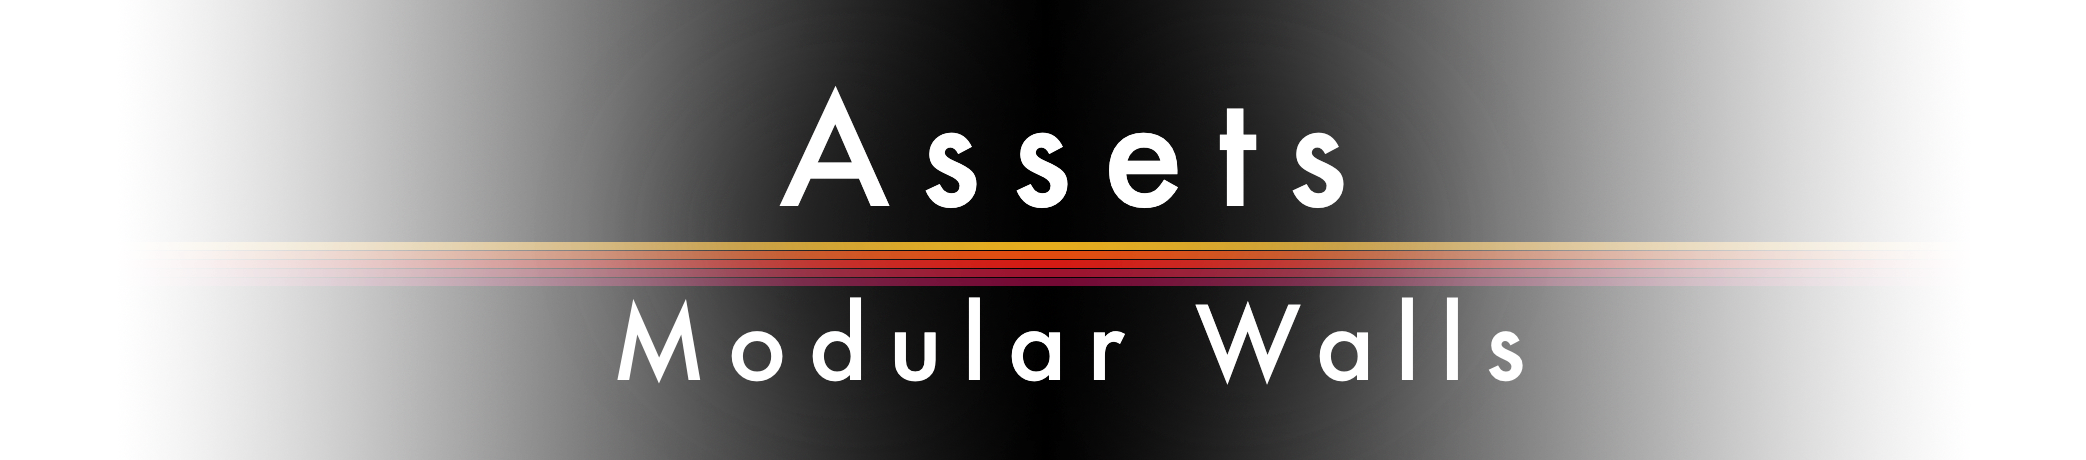 Assets - Modular Walls Pack